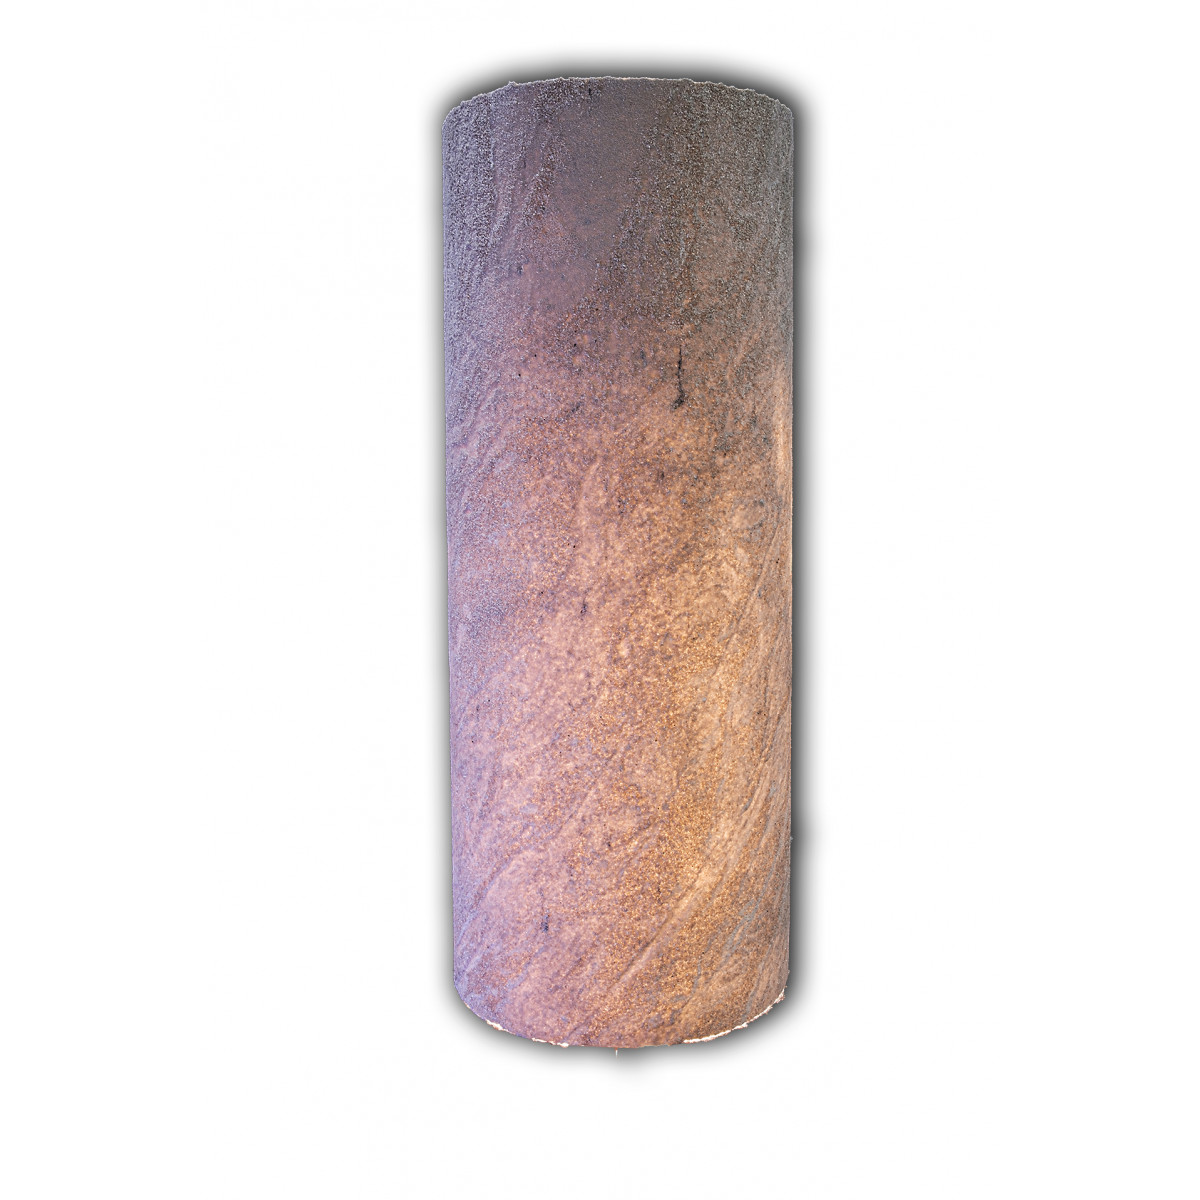 Гибкий камень Мрамор Standart на силикон-акриловом связующем Bena 